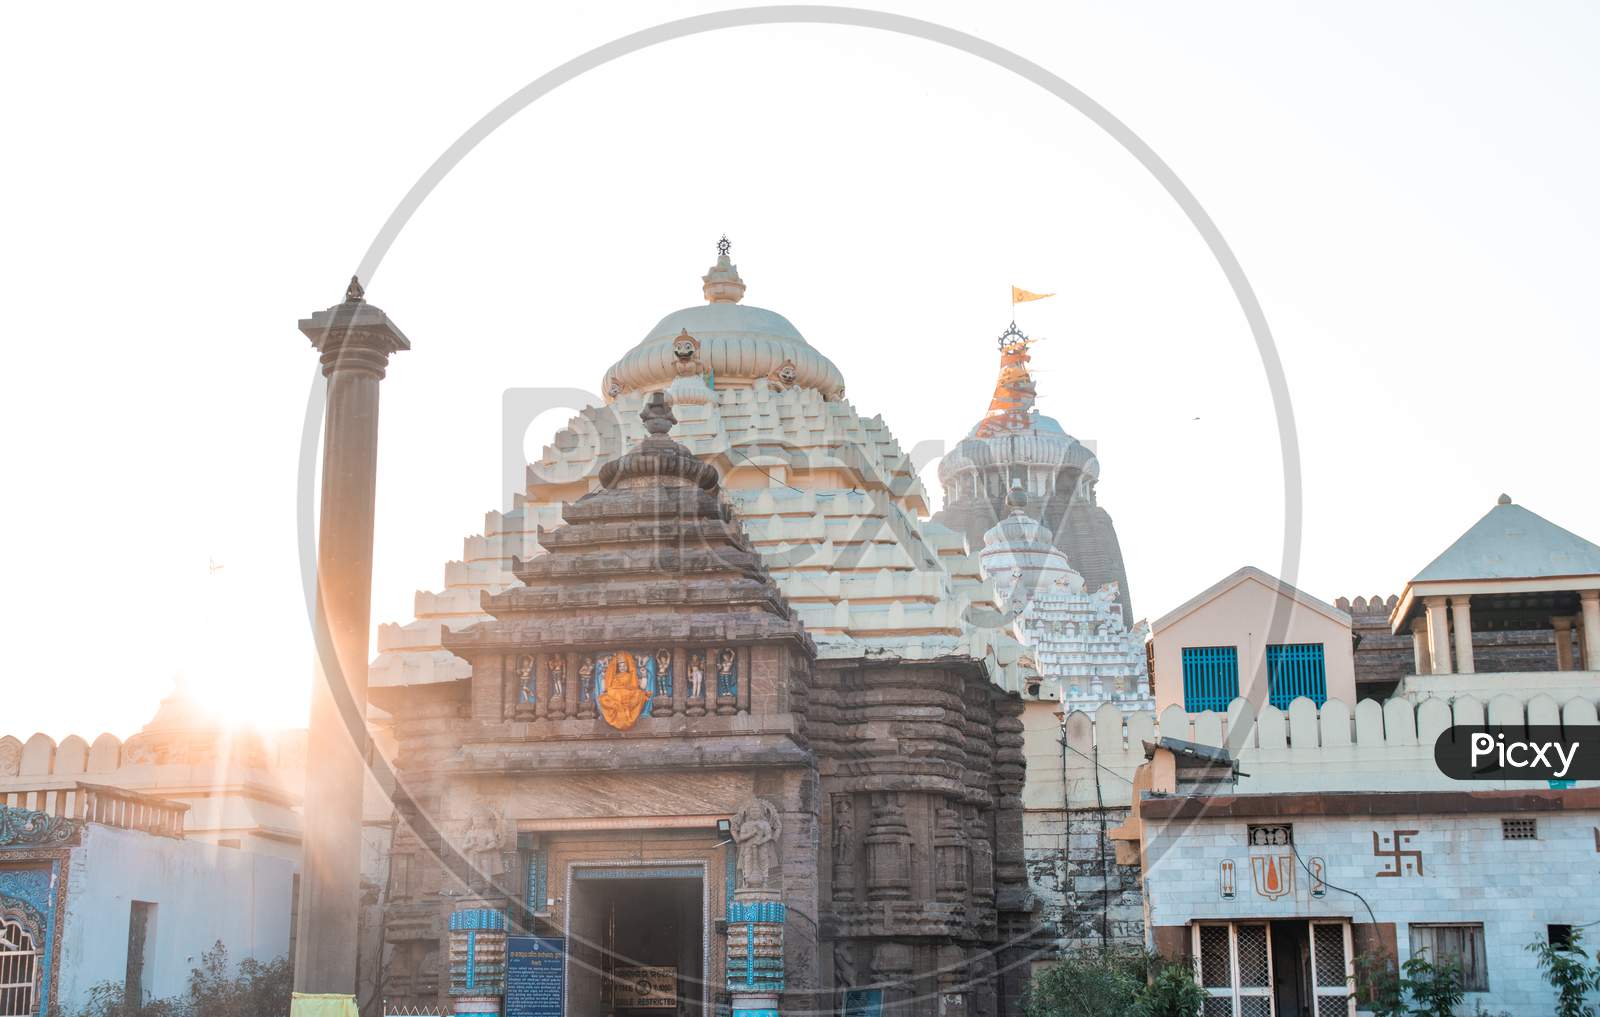 Puri  Jagannath Temple., Puri, Odisha